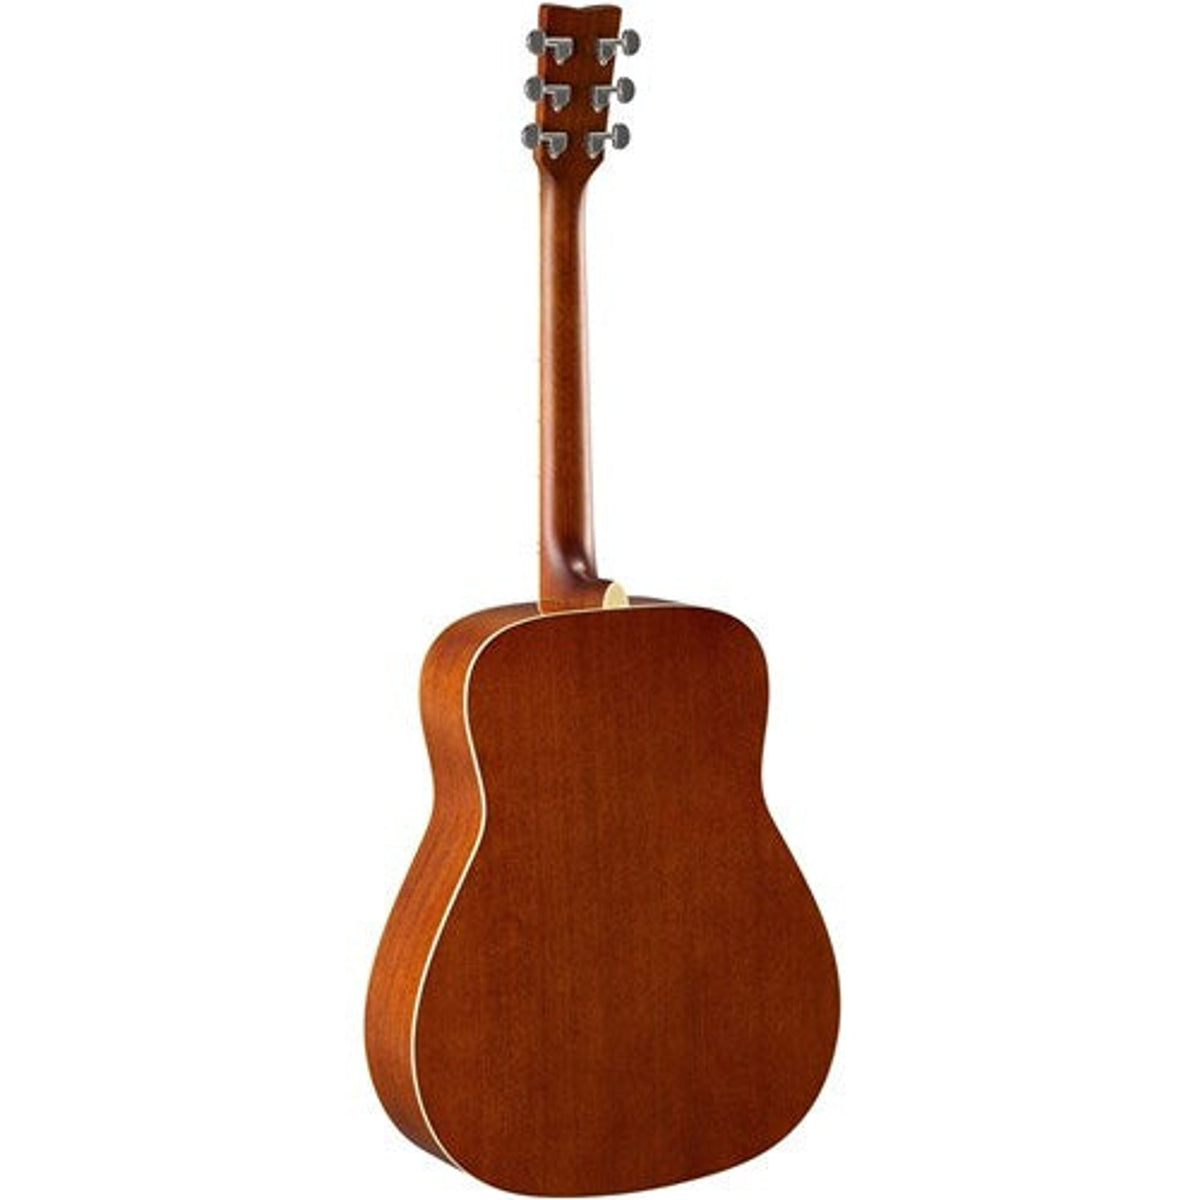 Yamaha FG820 Acoustic Steel String Guitar Left Handed Natural